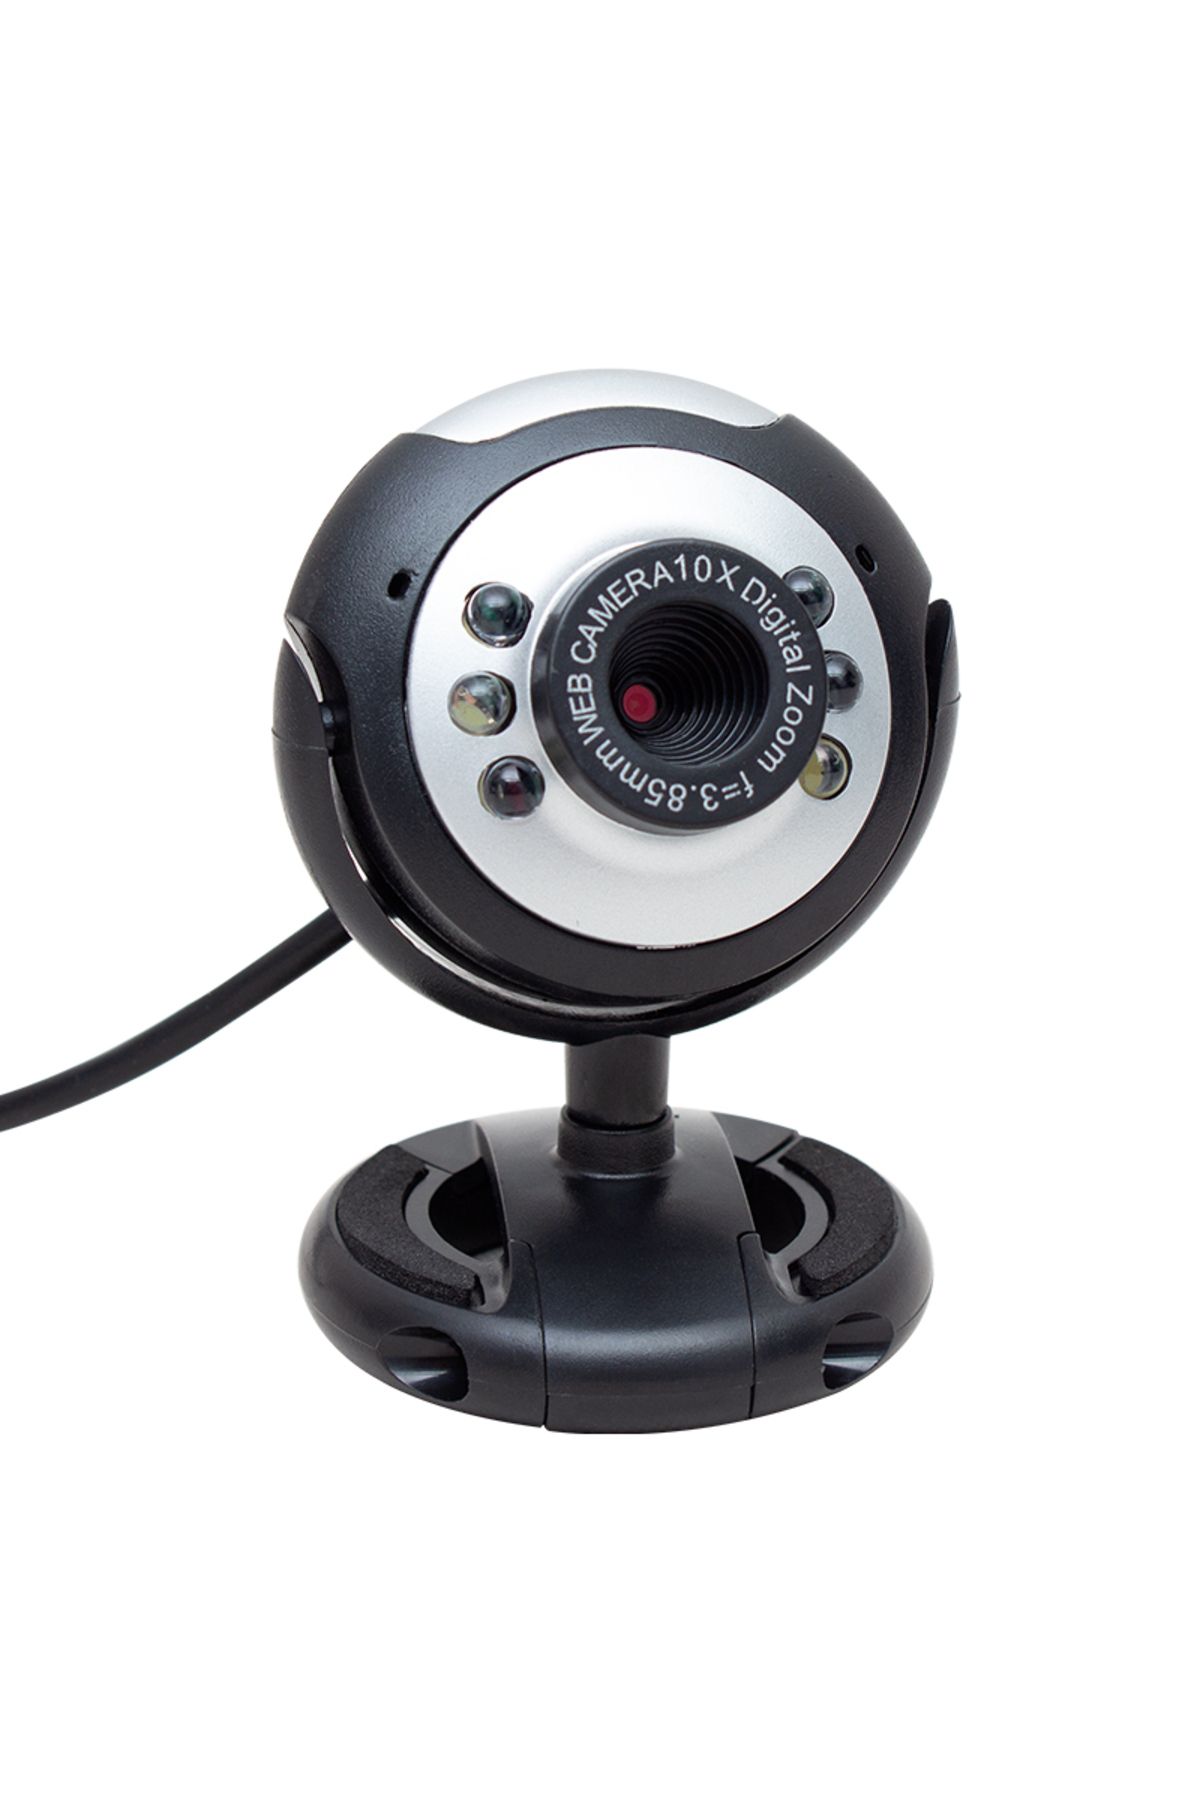 SKY TOPTAN Shopzum Pm-3962 1.3 Mp 10x Zoom 6 Ledli Mikrofonlu Usb Webcam